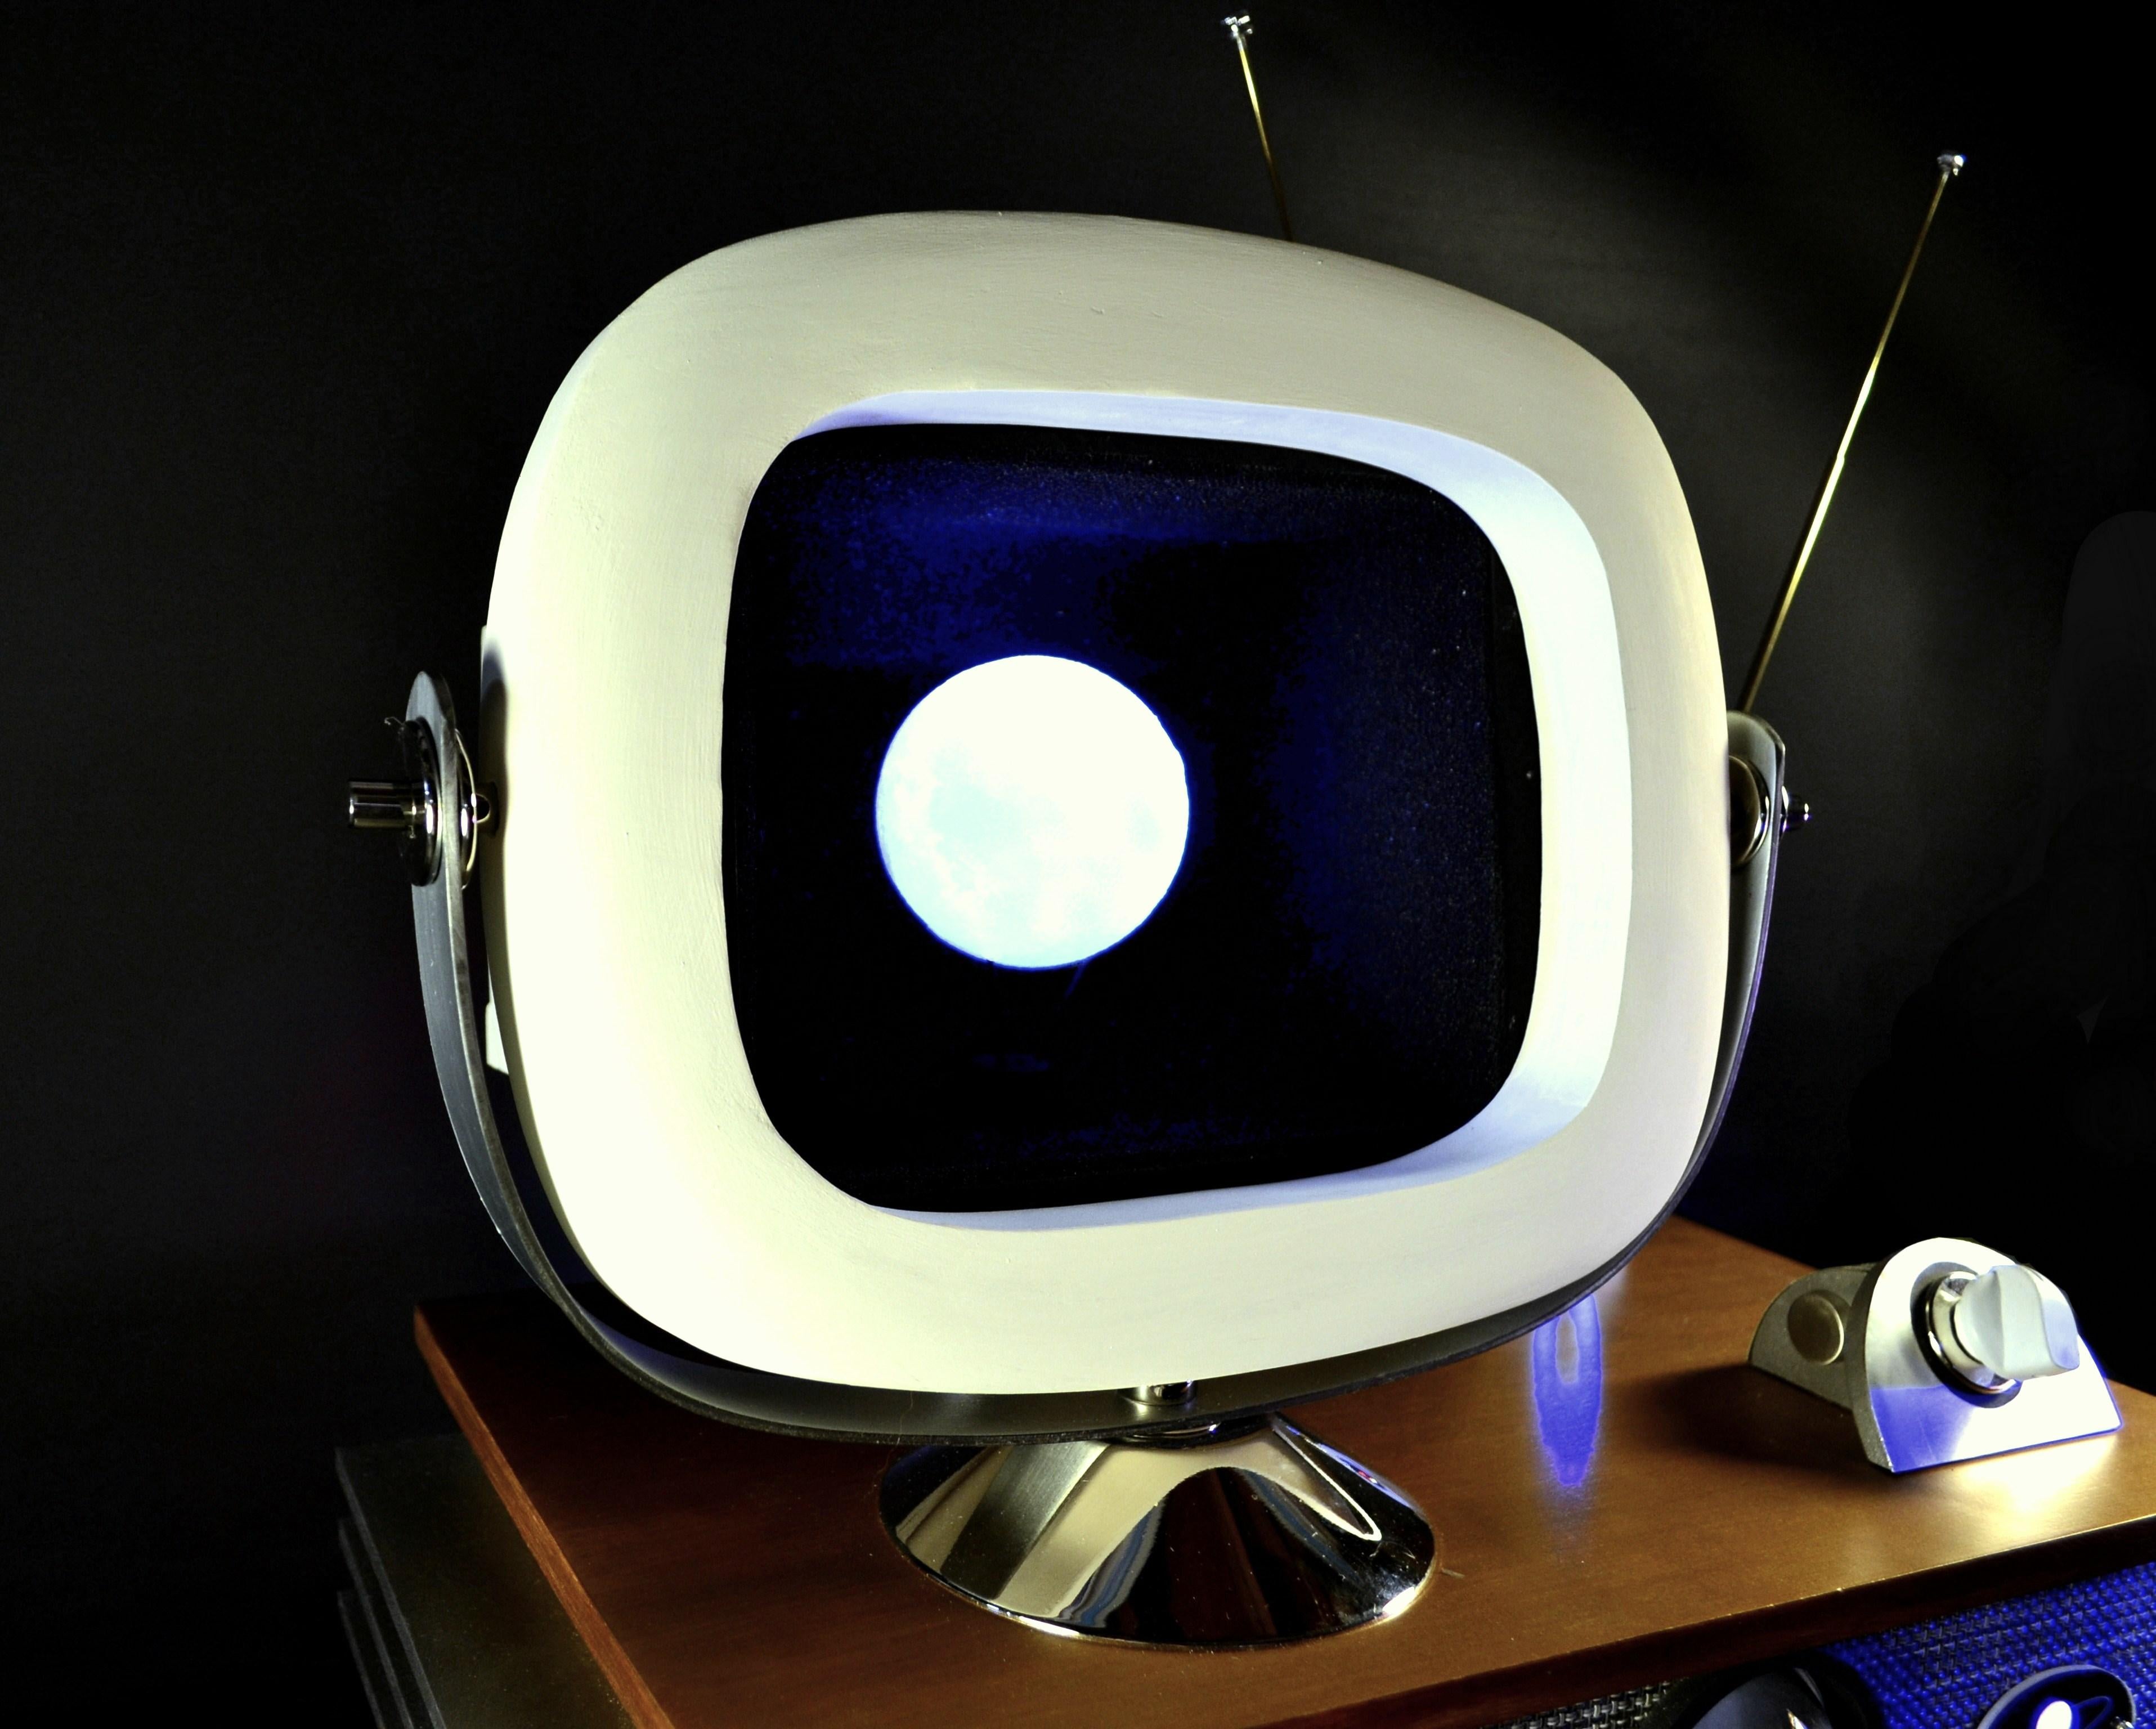 Mid-Century Modern Art Donovan / Kinetic, Illuminated, Moon TV Sculpture, Midcentury/Atomic Age